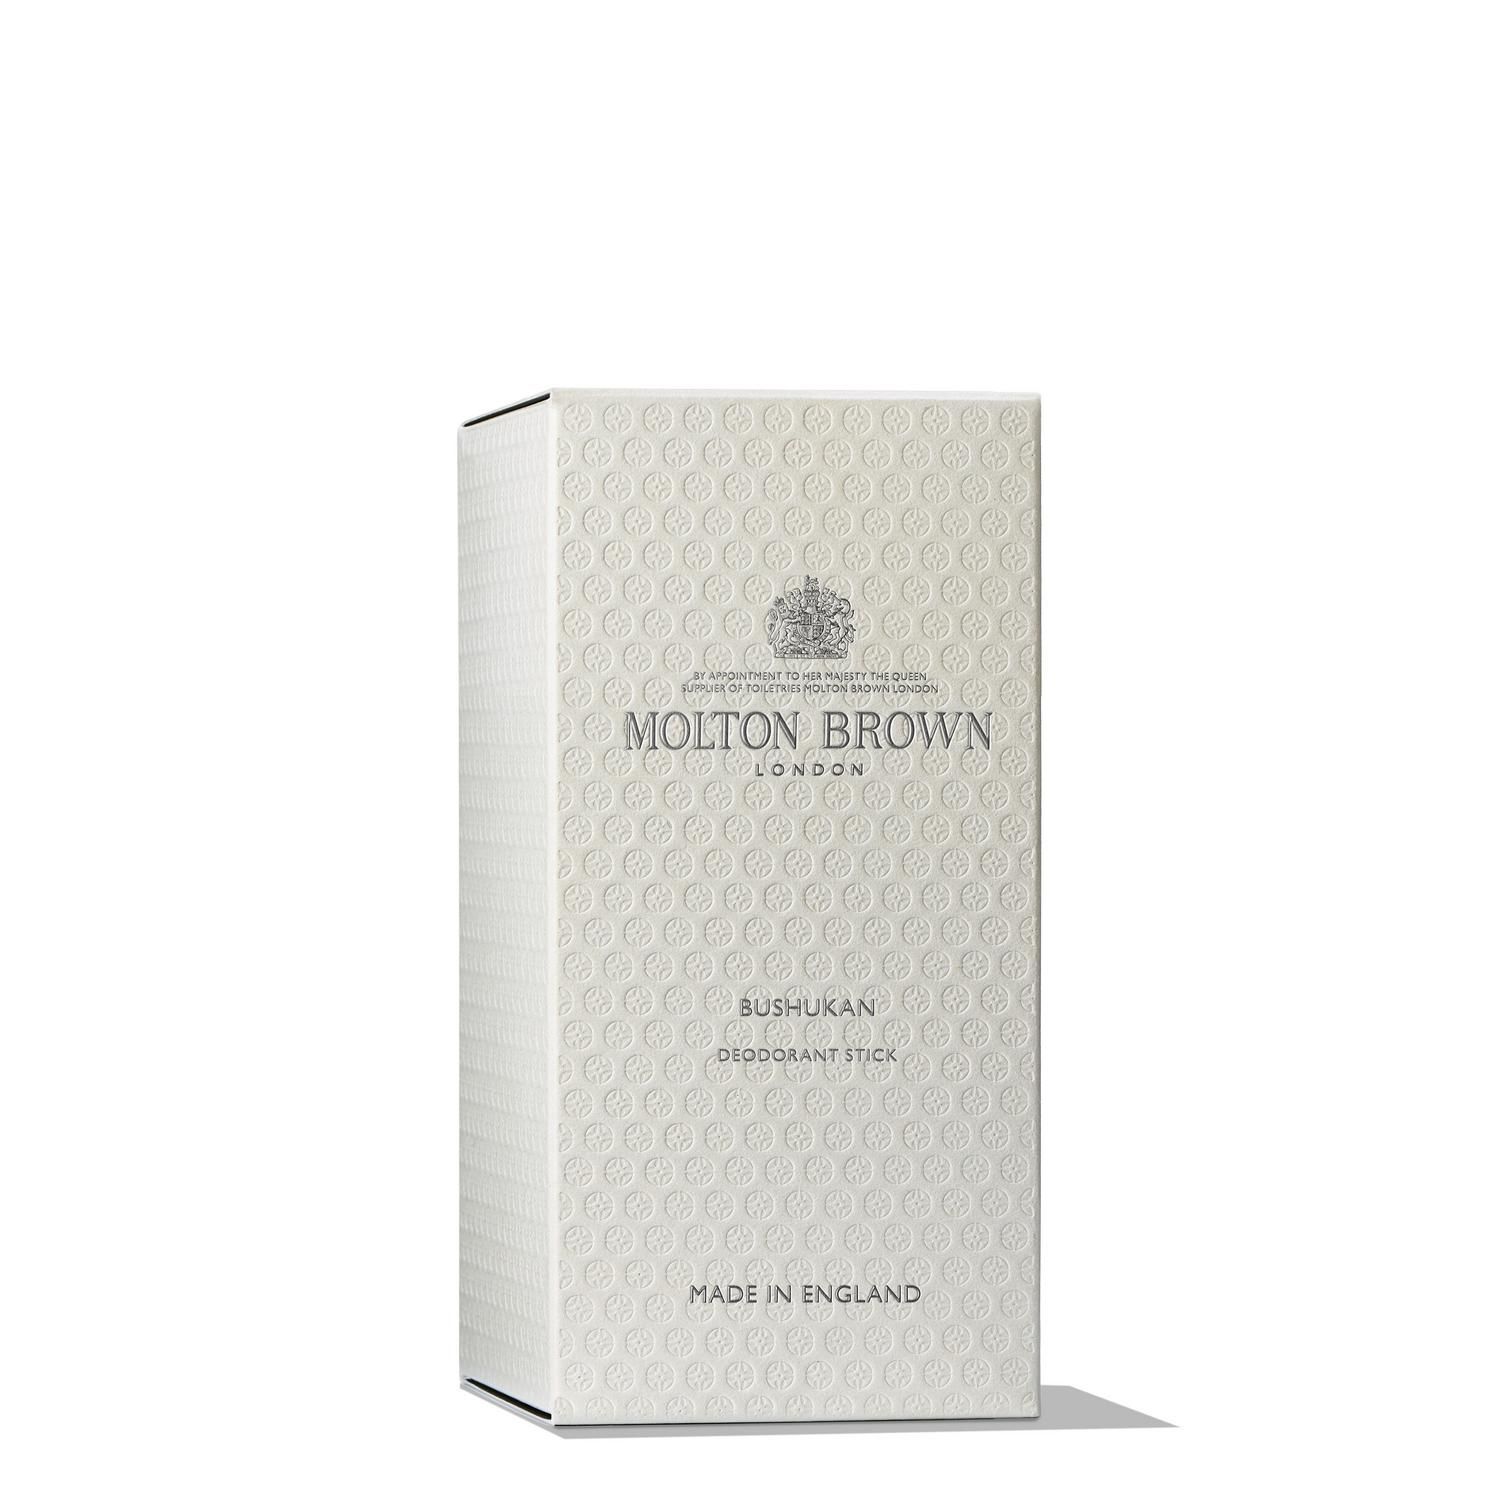 Molton Brown Bushukan Deodorant Stick NEW 2.6 oz.